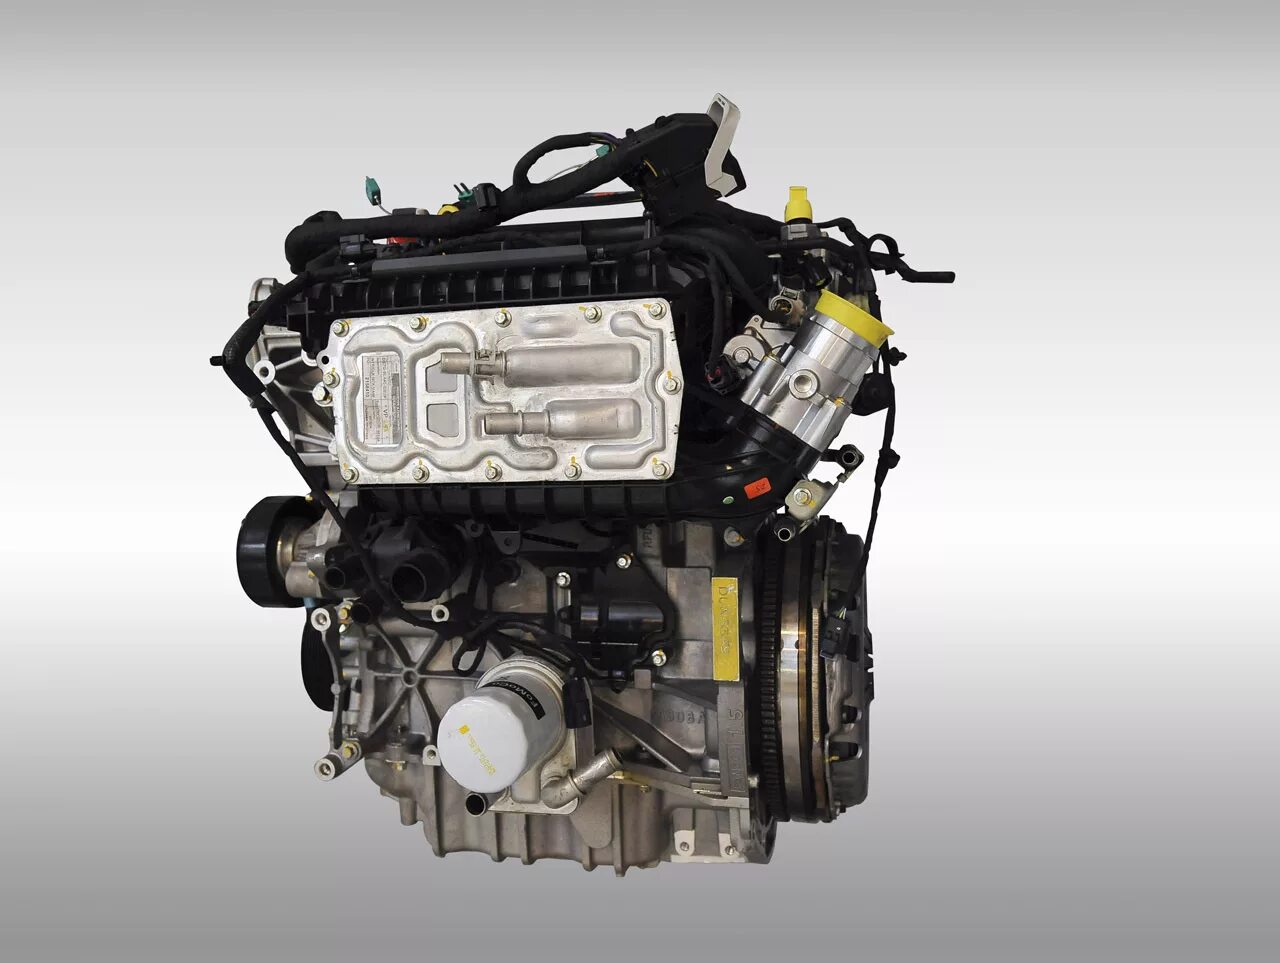 Купить новый двигатель форд. 1.5L ECOBOOST 16v. Ford 1.5 ECOBOOST. Ford Fusion 1.5 ECOBOOST. Двигатель Форд Мондео 1.